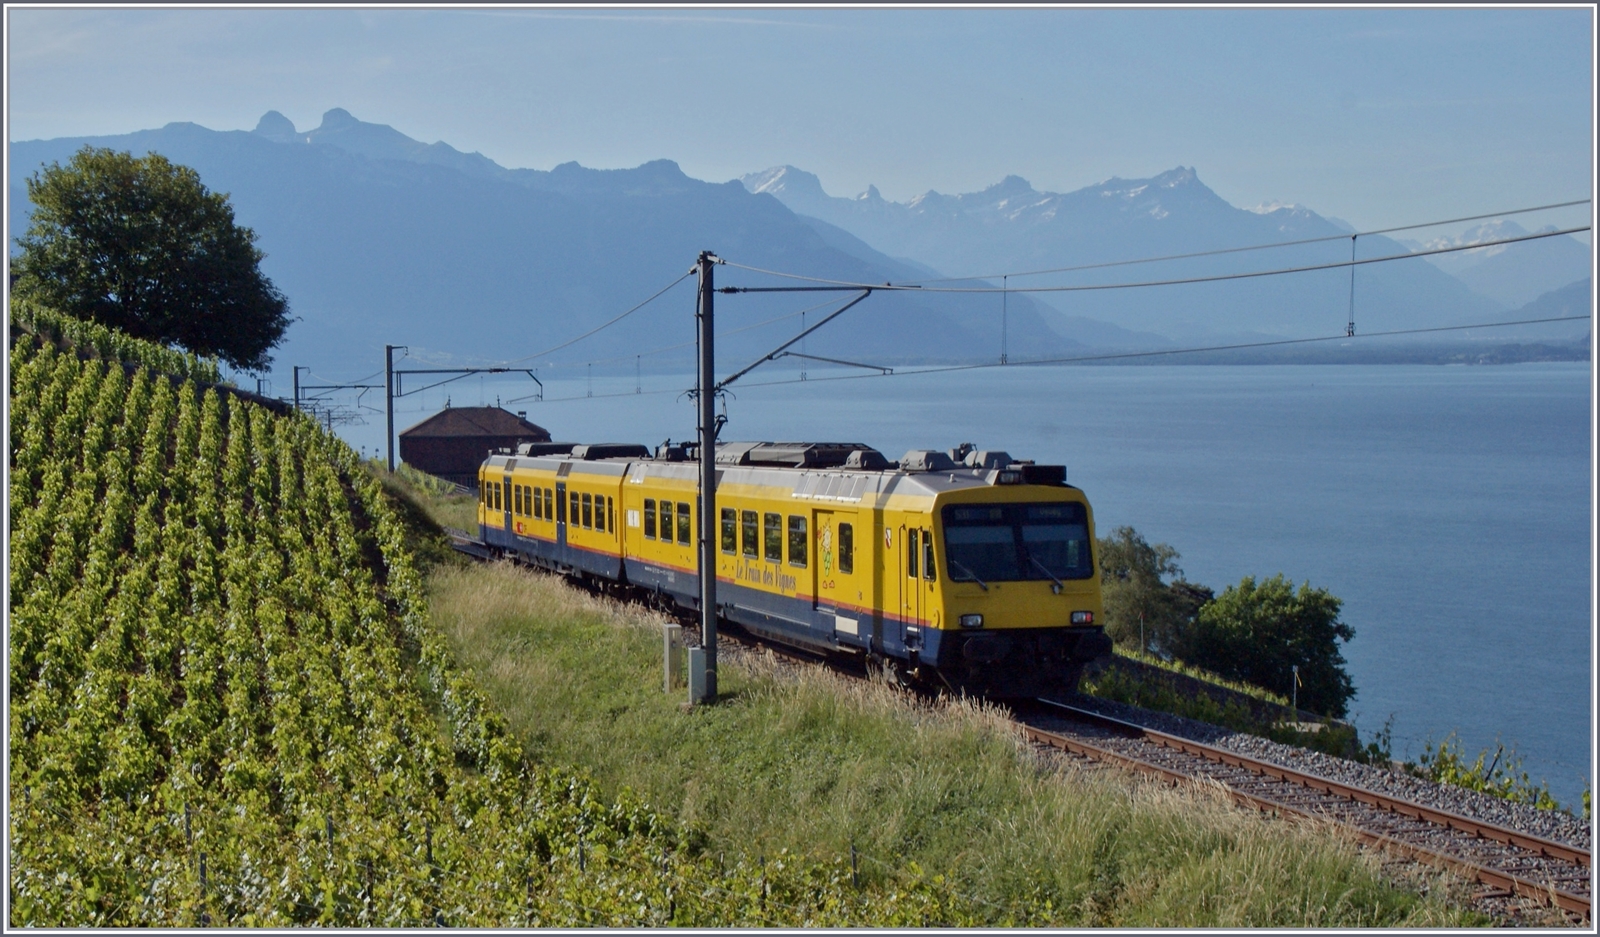 Der RBDe 560 131  Train de Vignes  ist auf seiner Strecke hoch über dem Genfersee auf der Fahrt nach Vevey unterwegs. 

29. Mai 2011